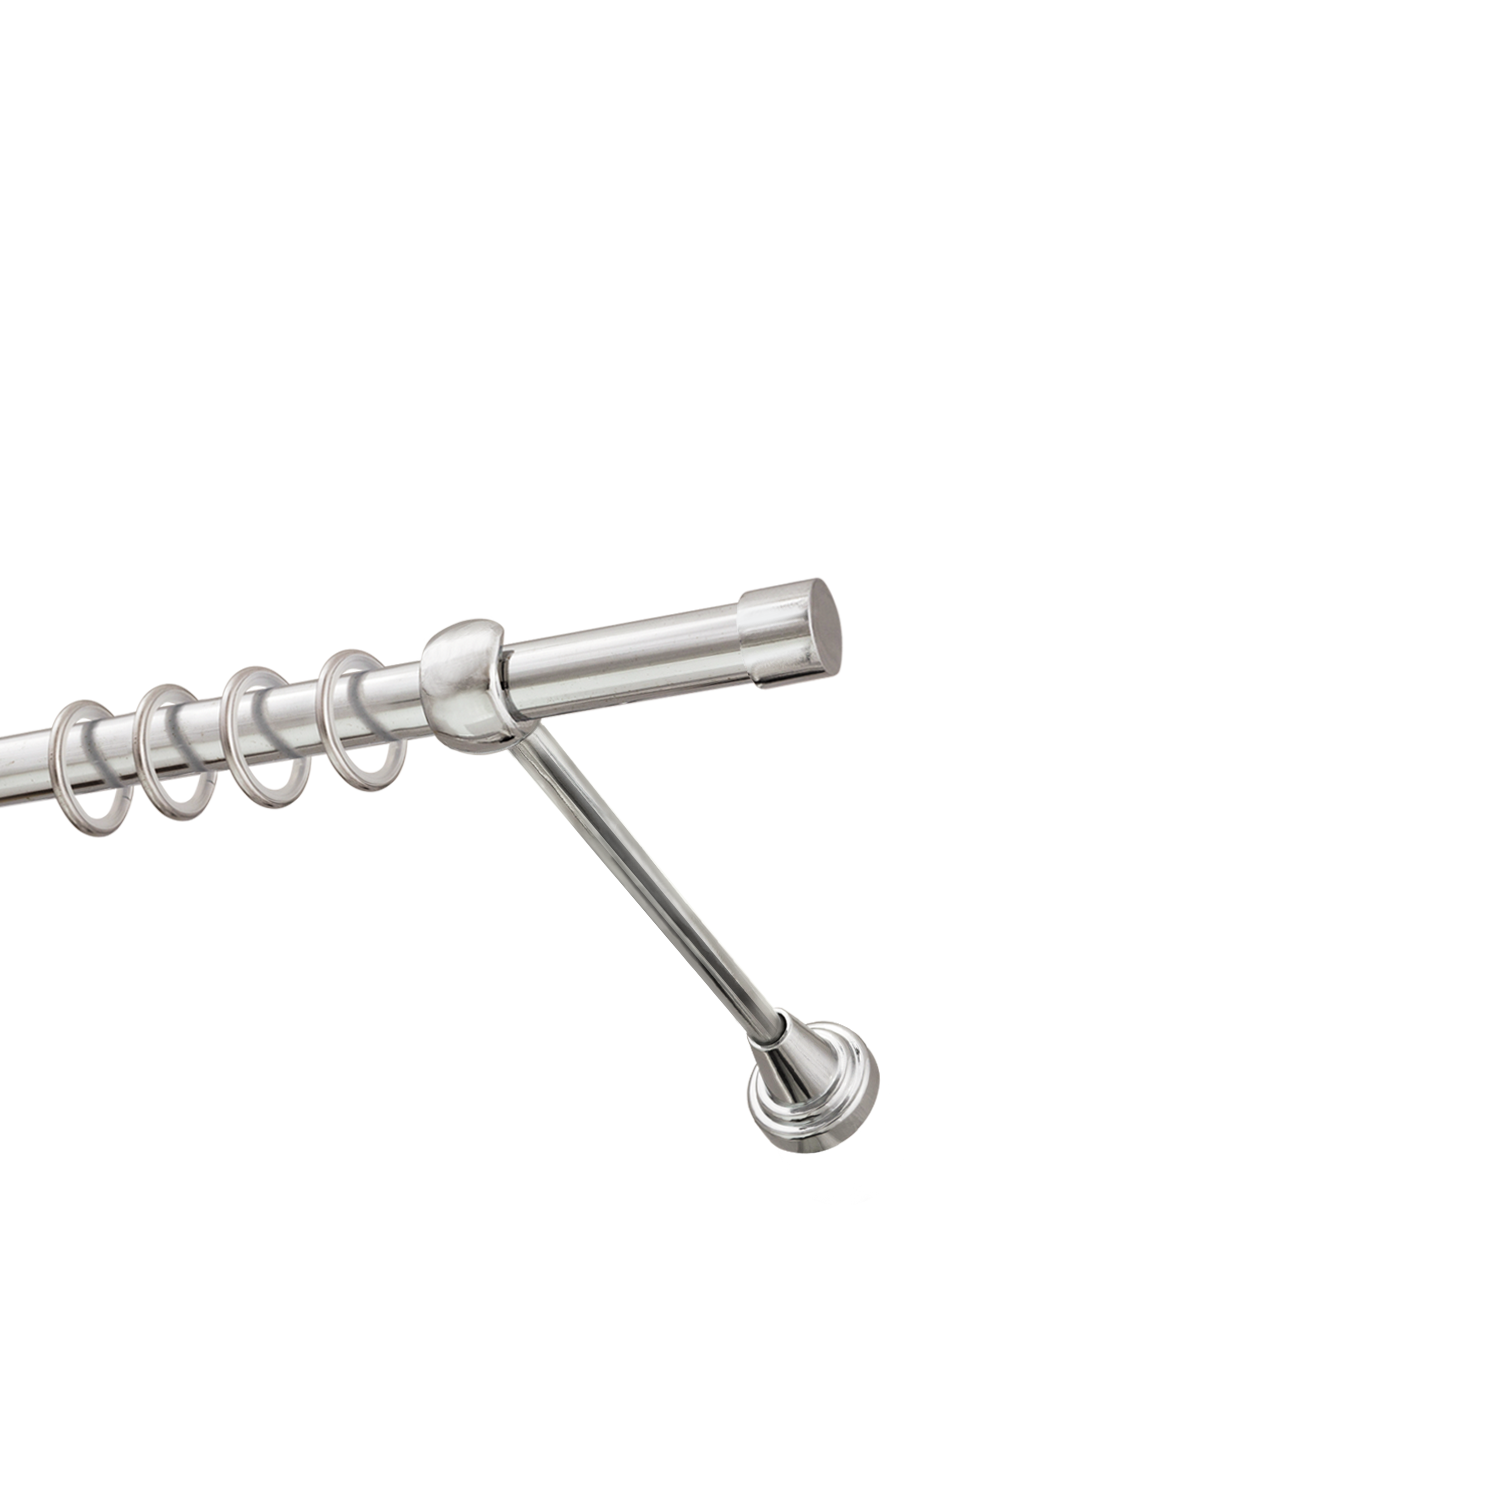 Металлический карниз для штор Заглушка, однорядный 16 мм, серебро, гладкая штанга, длина 160 см - фото Wikidecor.ru